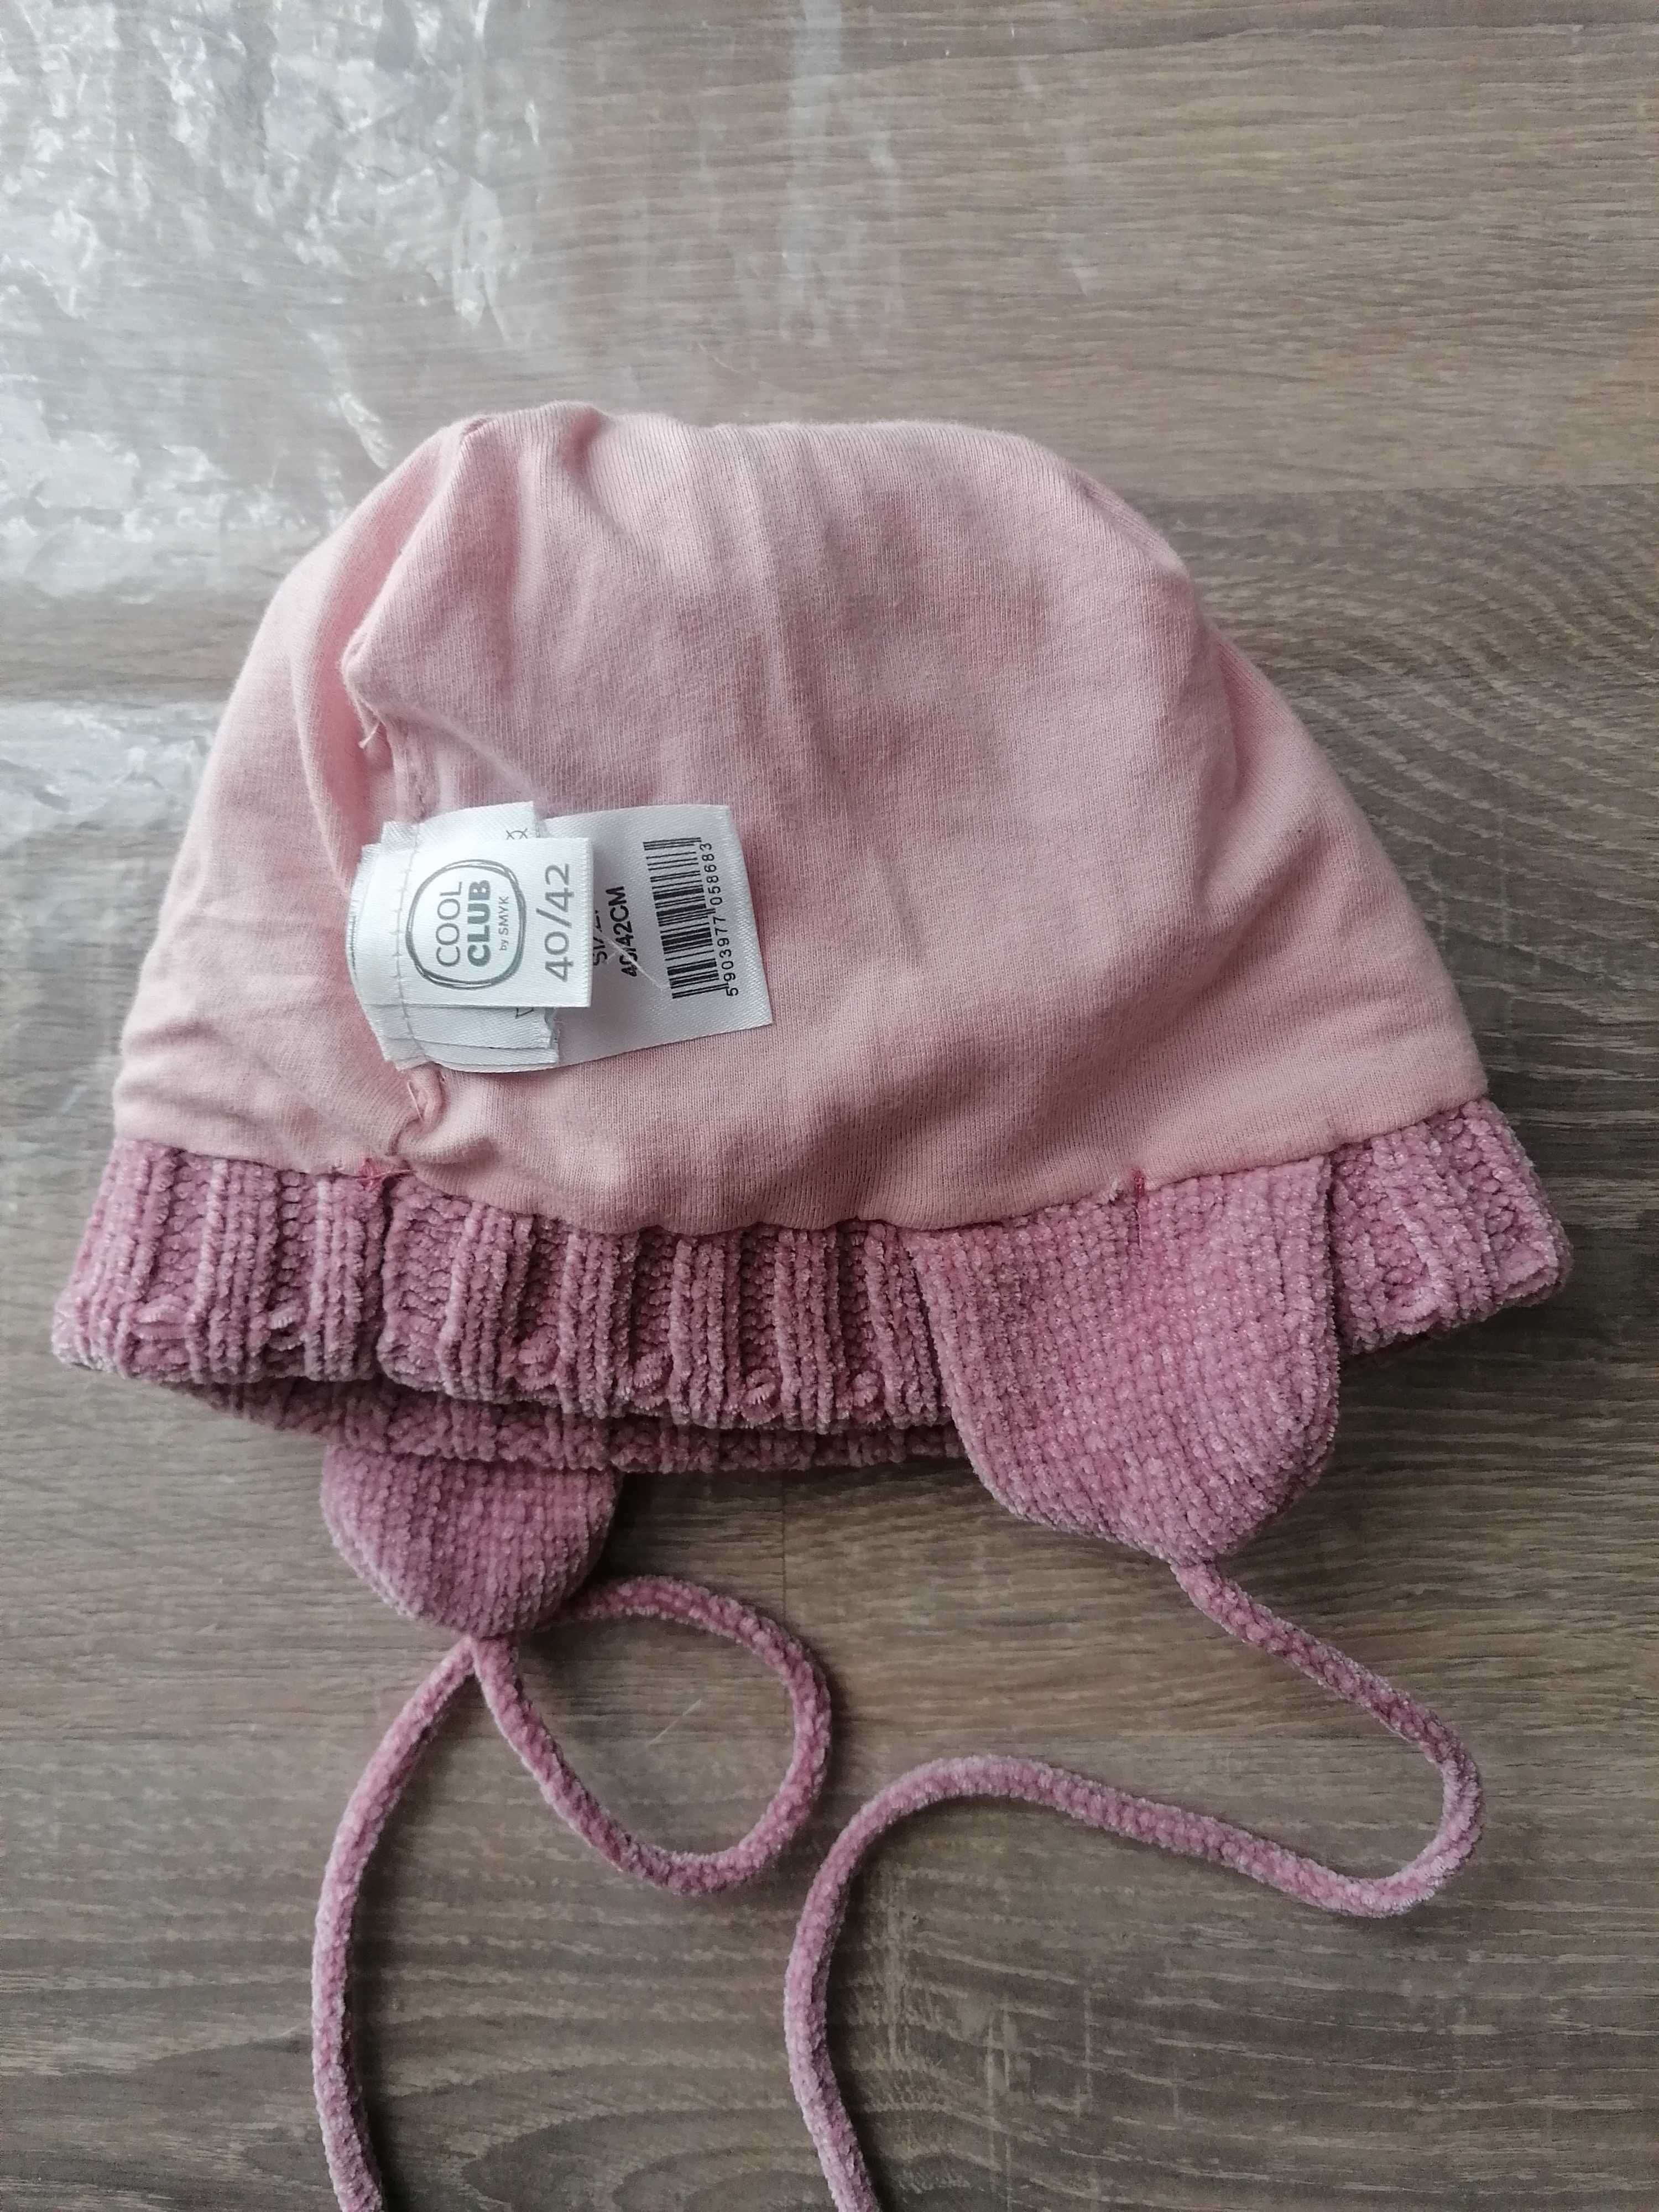 Детская шапка с бубоном(р. 40-42) и пинетки новые для новорожденного